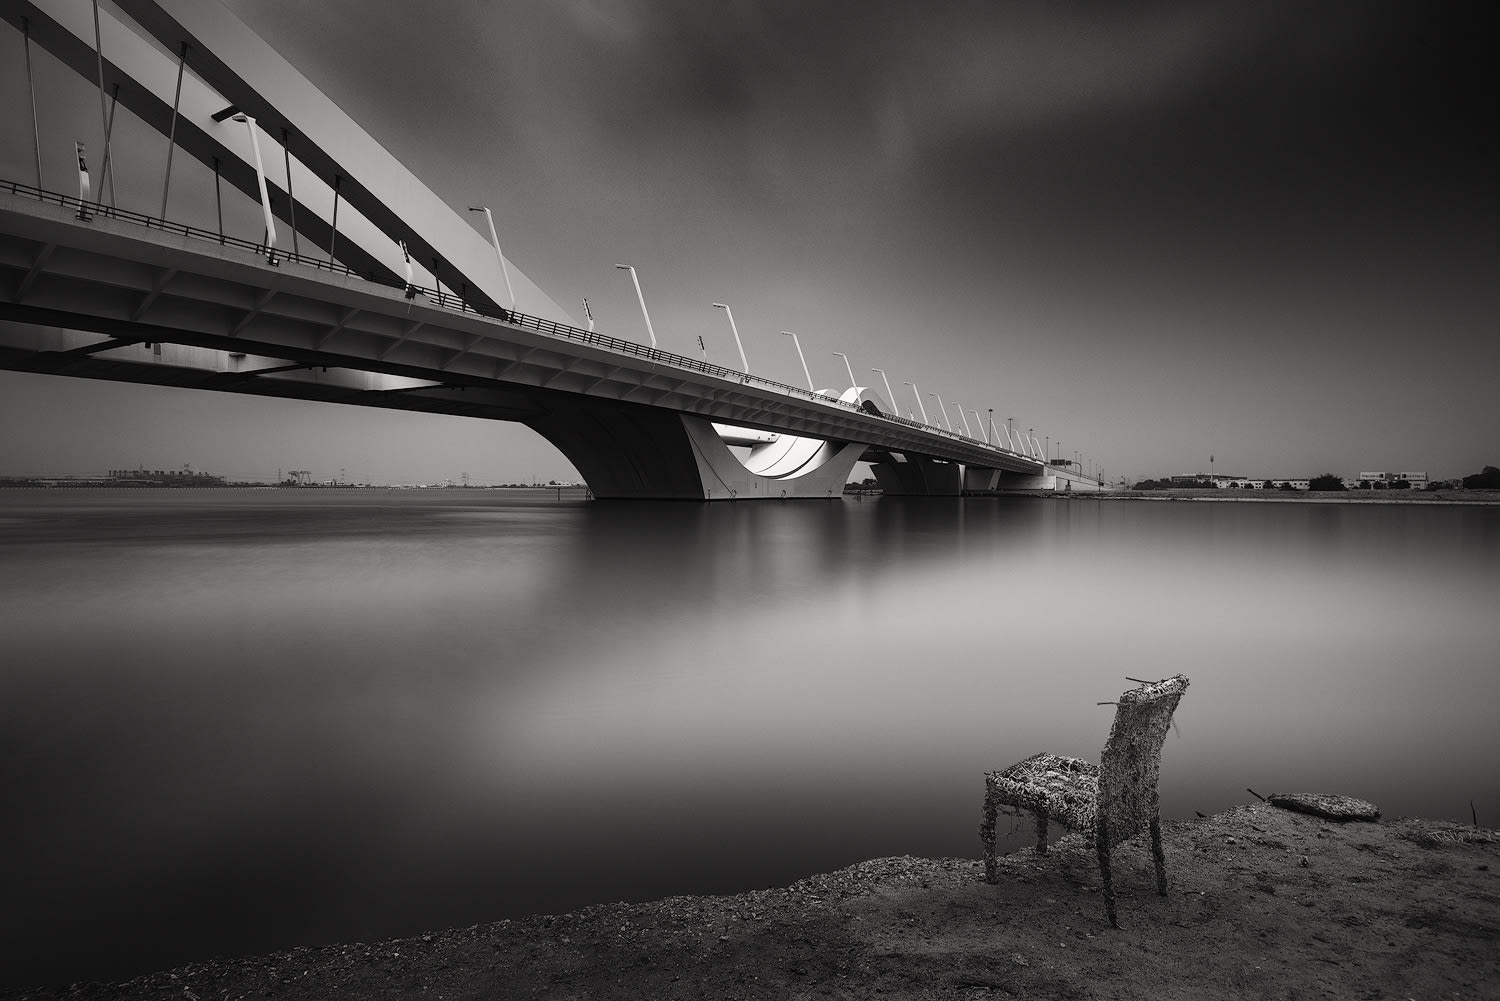 جسر الشيخ زايد في أبوظبي